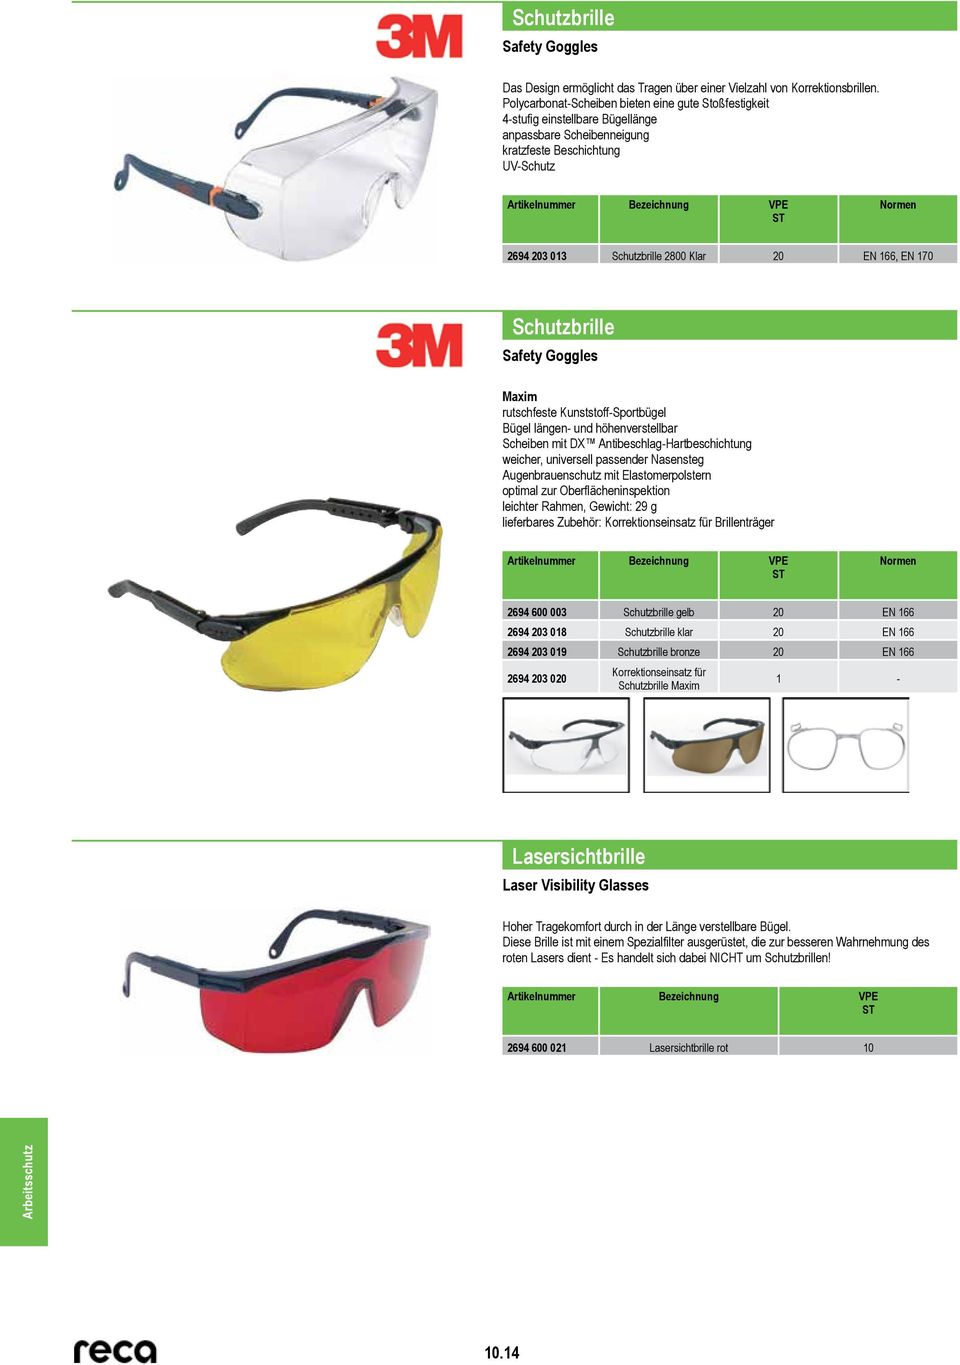 170 Schutzbrille Safety Goggles Maxim rutschfeste Kunststoff-Sportbügel Bügel längen- und höhenverstellbar Scheiben mit DX Antibeschlag-Hartbeschichtung weicher, universell passender Nasensteg